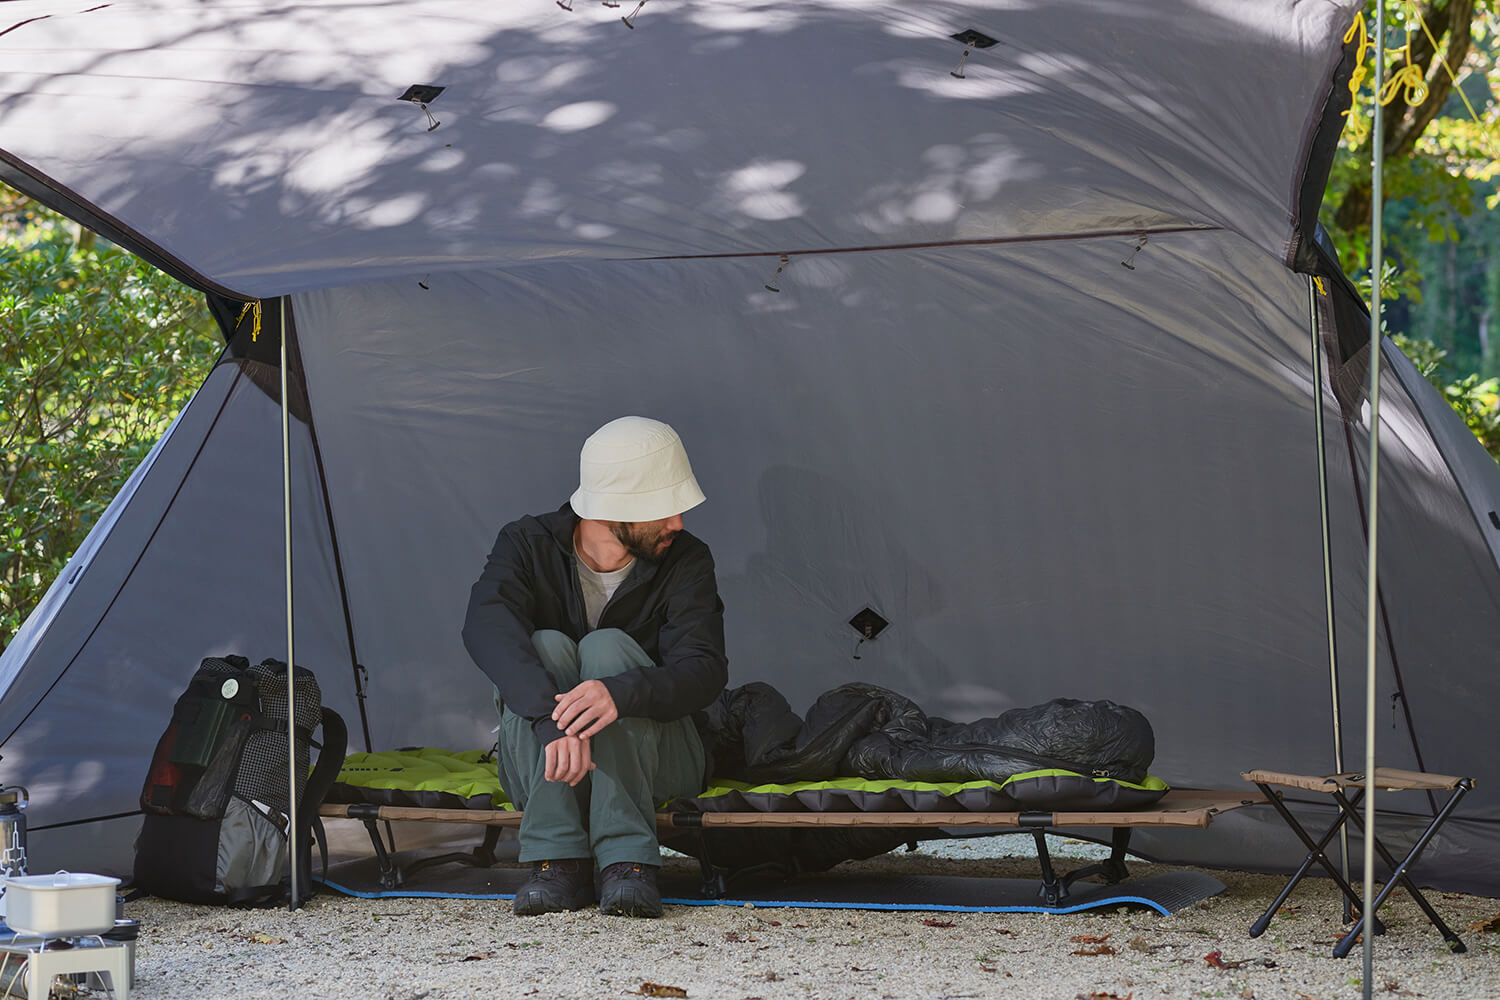 山のテント泊装備をキャンプに応用！コンパクト装備で自然を満喫しよう